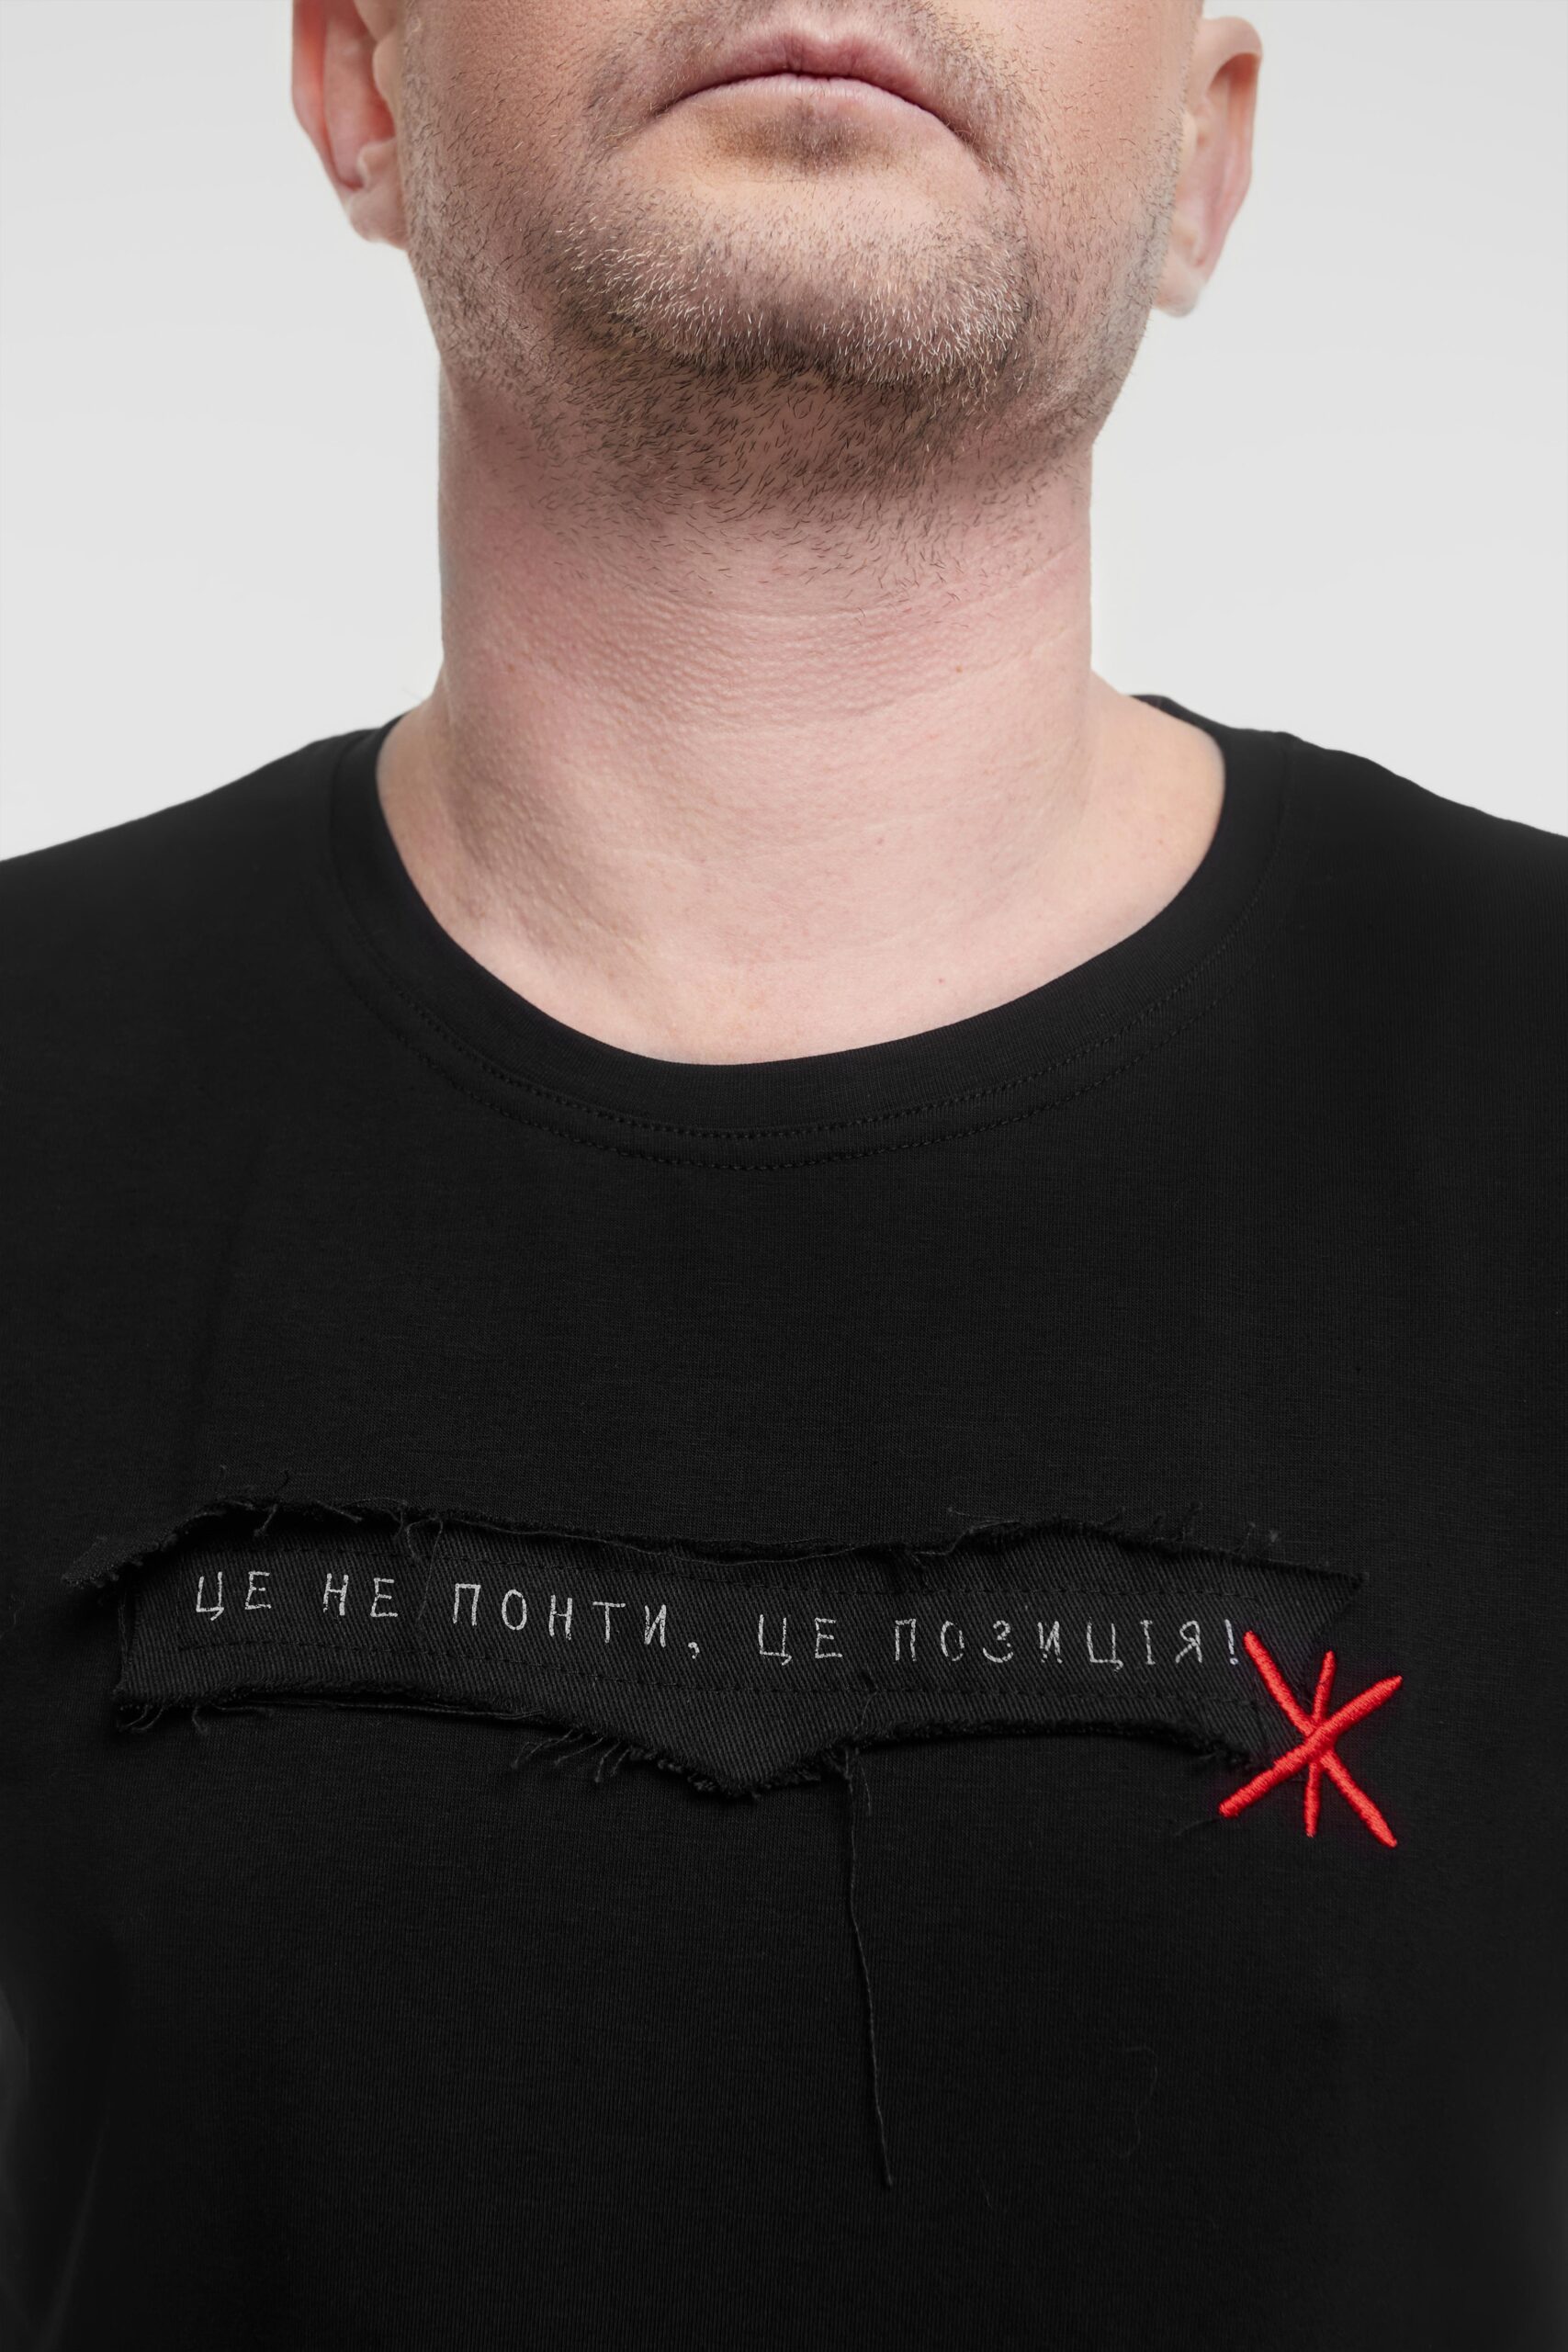 Men's T-Shirt Statement. Color black. 2.